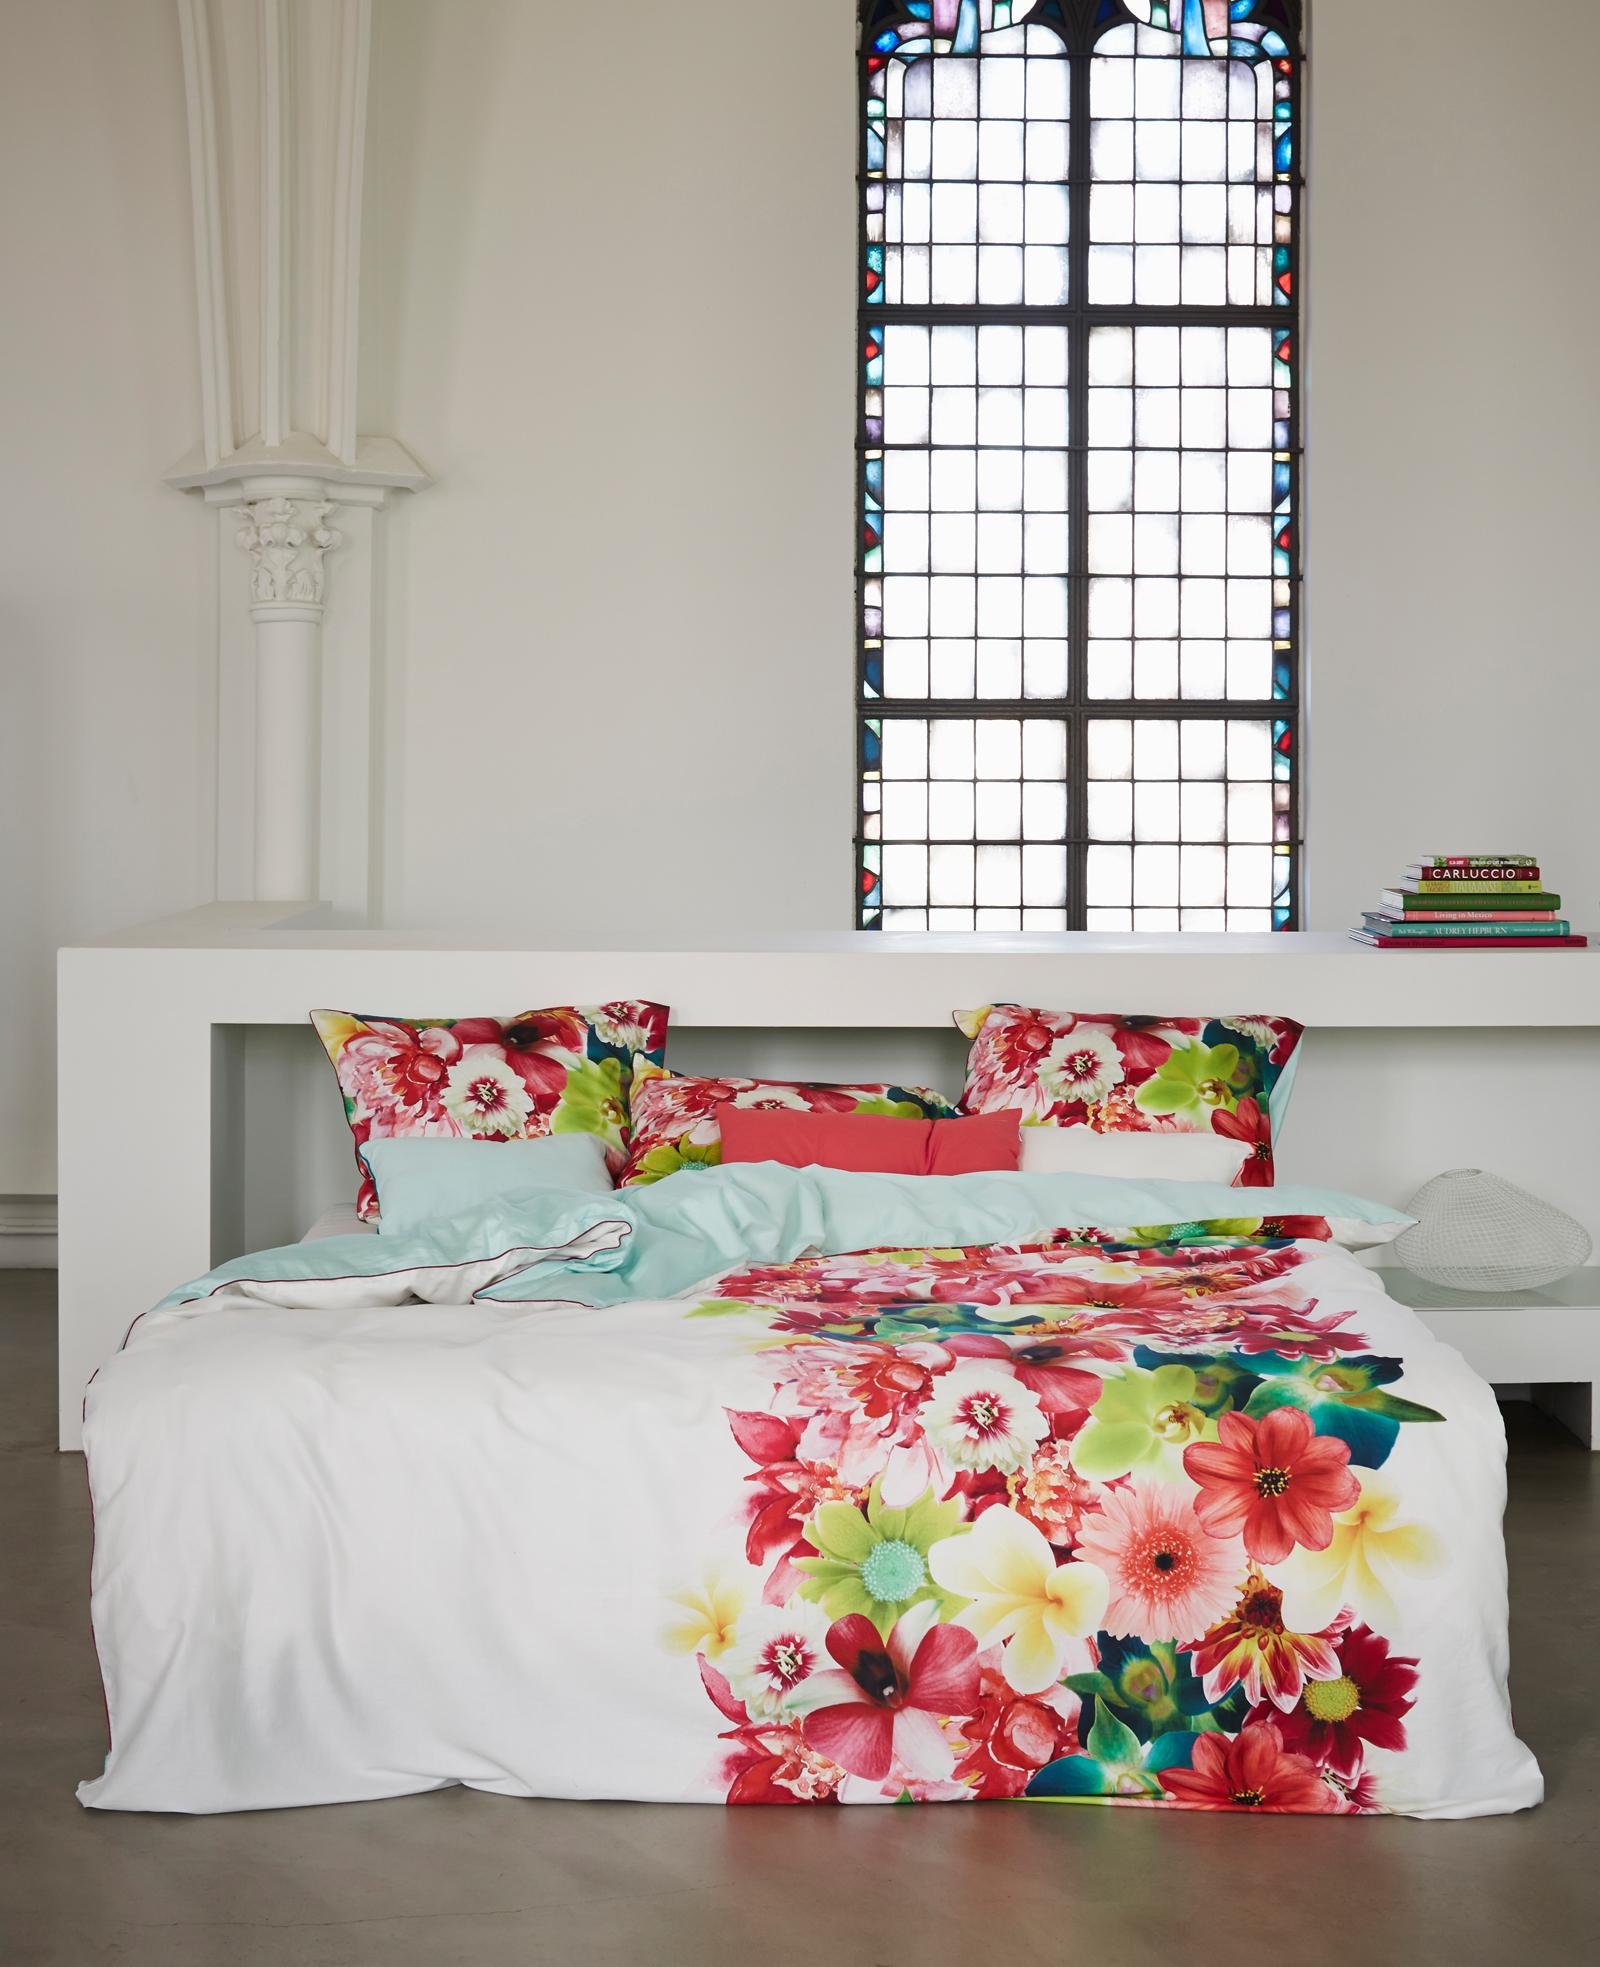 Blumenbettwäsche für mehr Romantik #altbau #bettwäsche #buntebettwäsche ©Essenza Home/Essenza